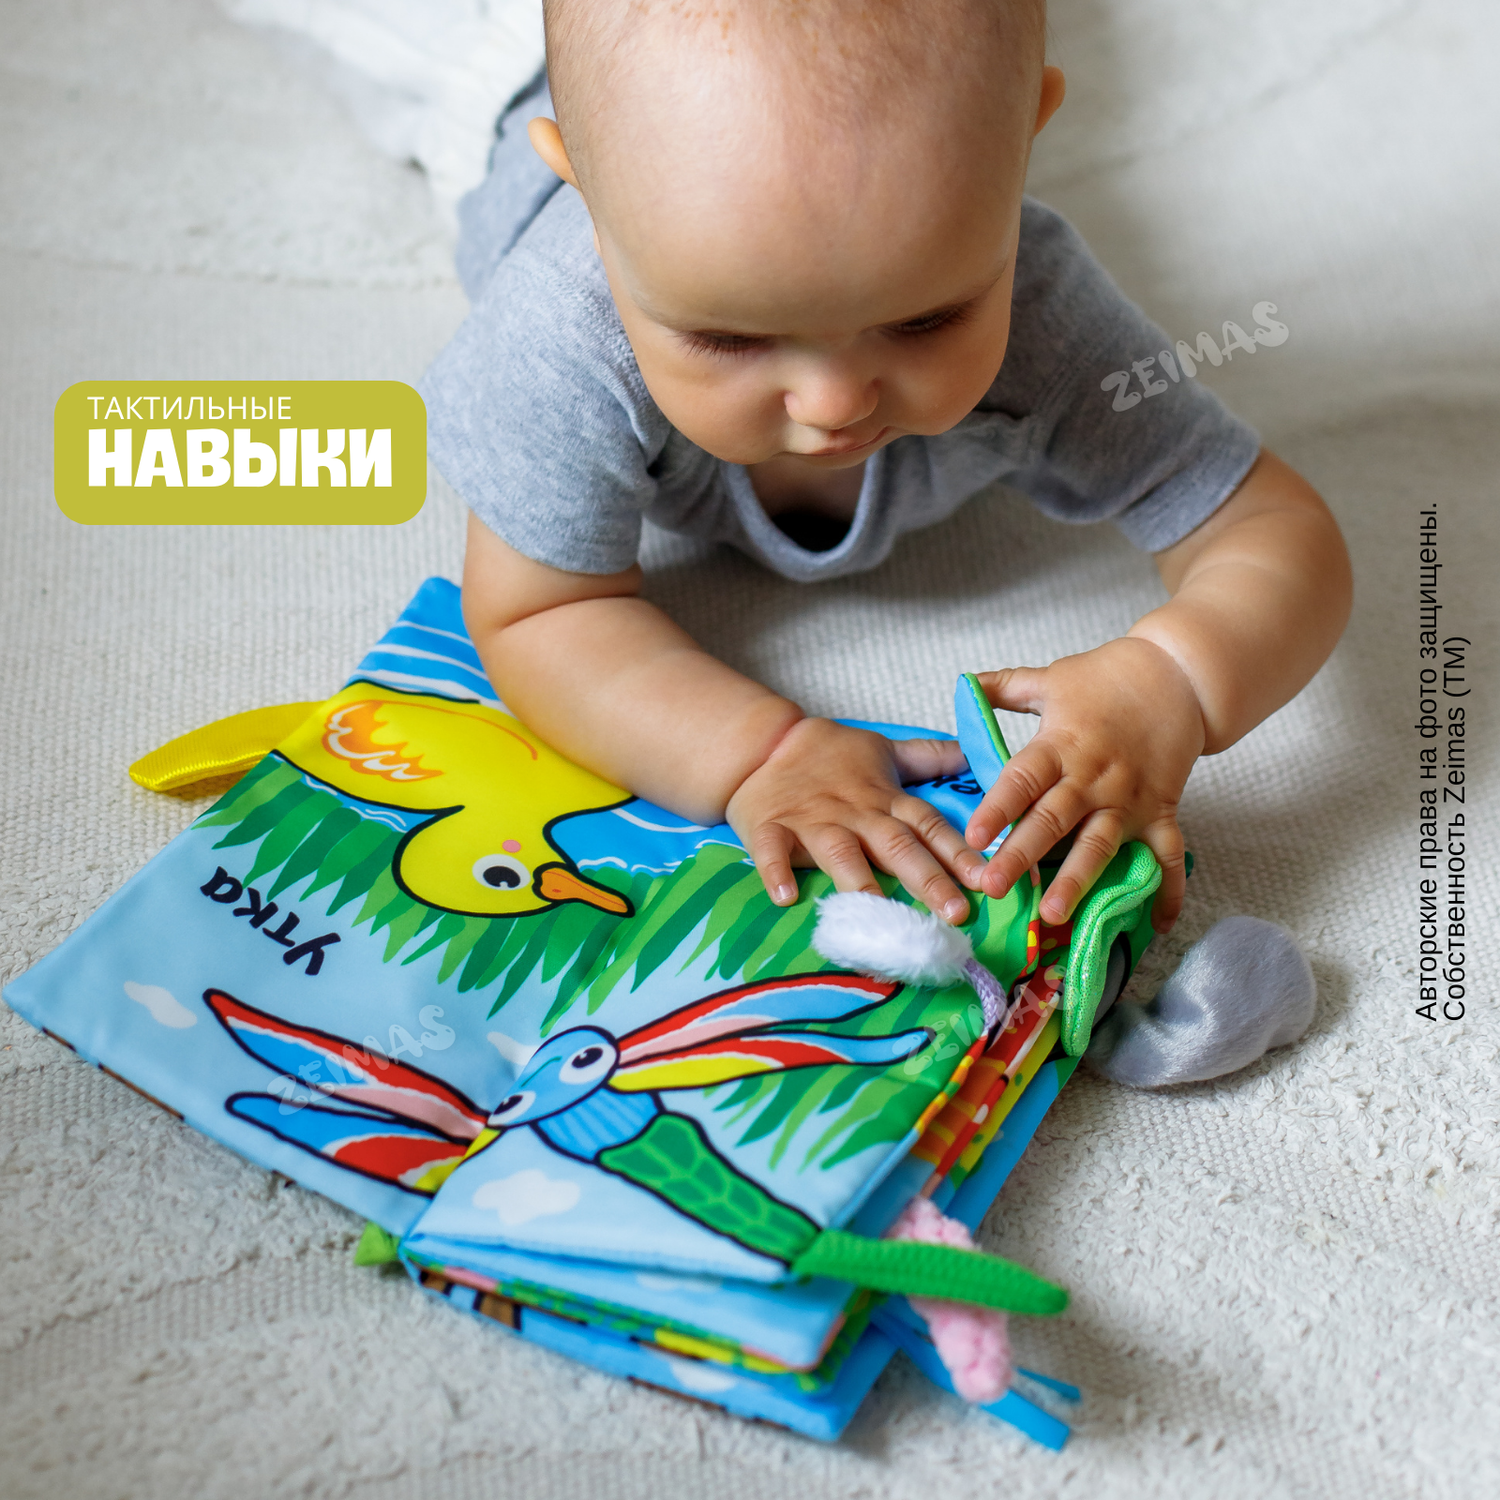 Книжка шуршалка детская Zeimas Лесной мир с хвостиками игрушка подвесная на кроватку - фото 10